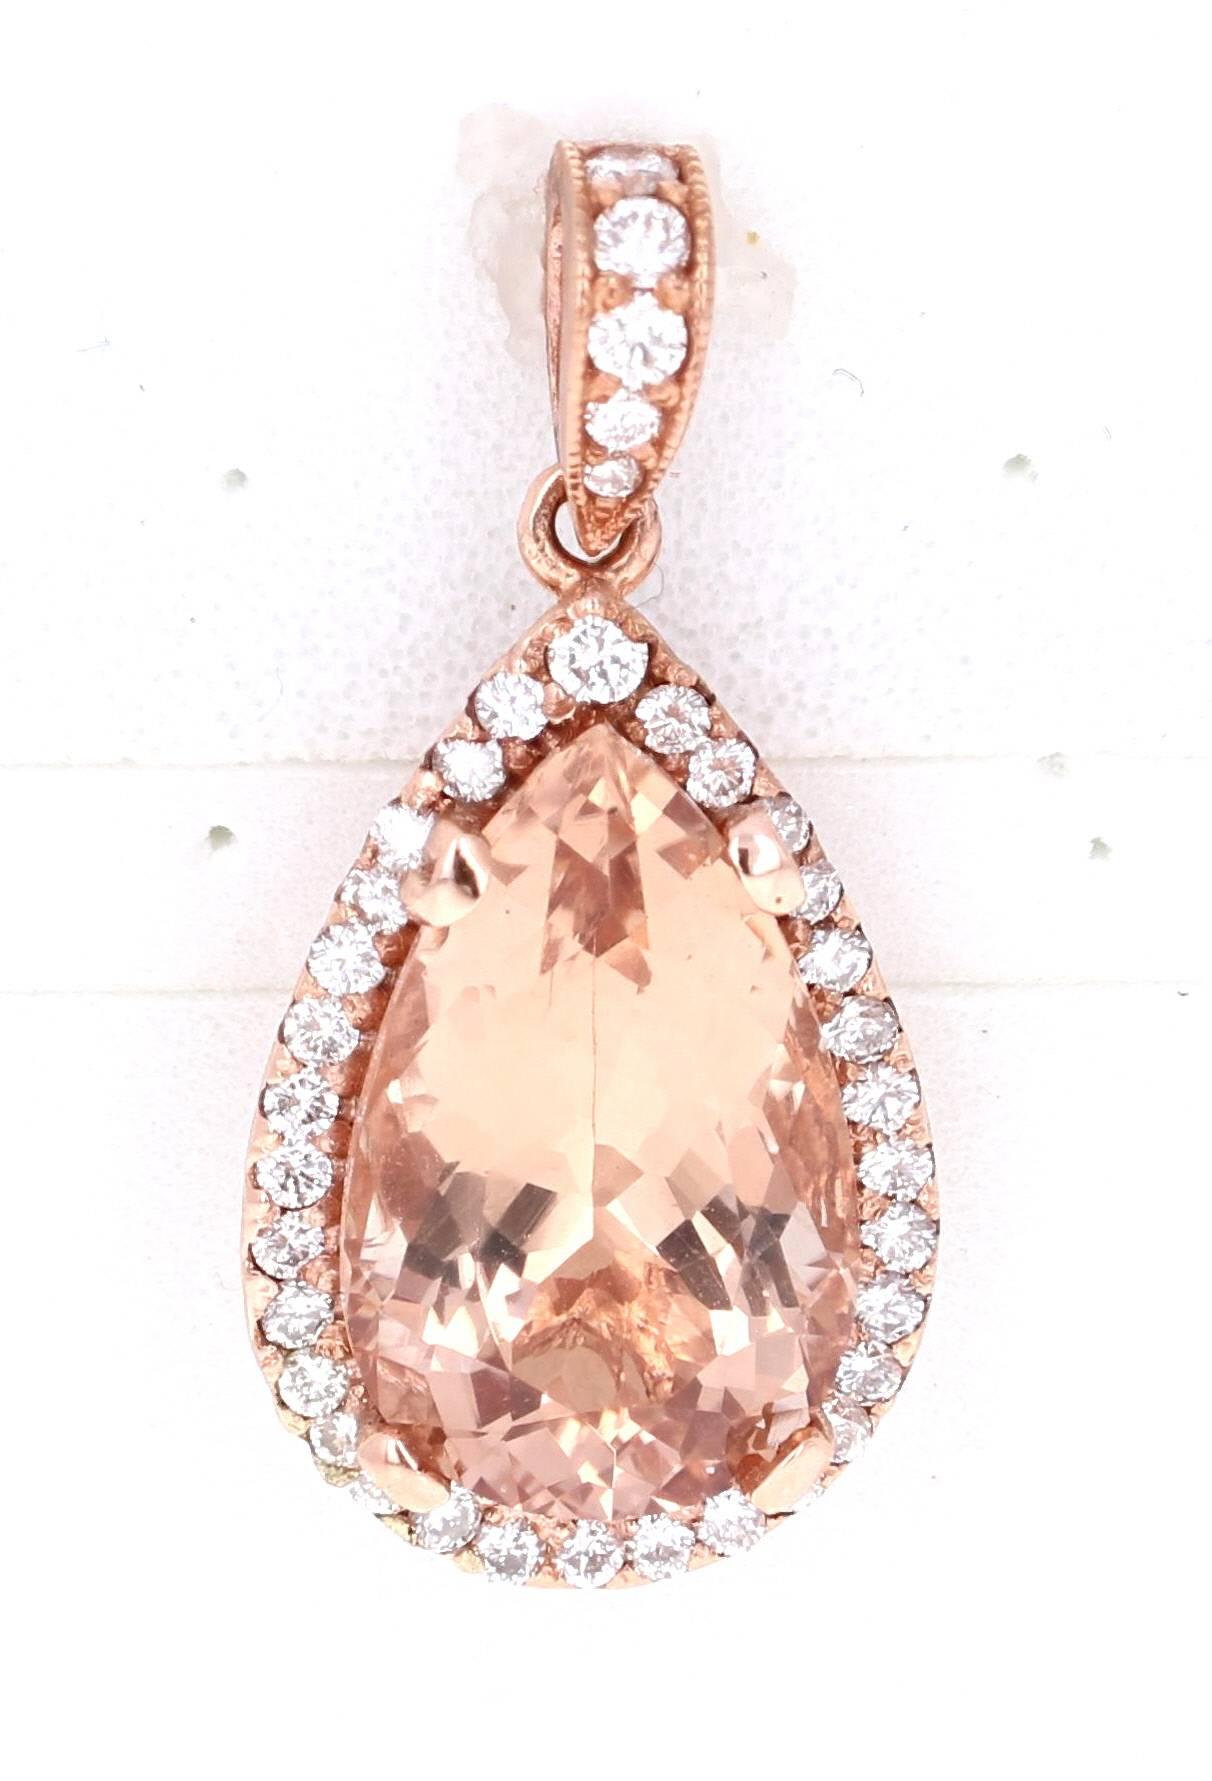 Magnifique pendentif en or rose avec Morganite et diamant de 6,28 carats, à assortir à tous vos bijoux en or rose !

La Morgane poire pèse 7,70 carats et est entourée de 36 diamants ronds pesant 0,70 carat.  Le poids total en carats du pendentif est